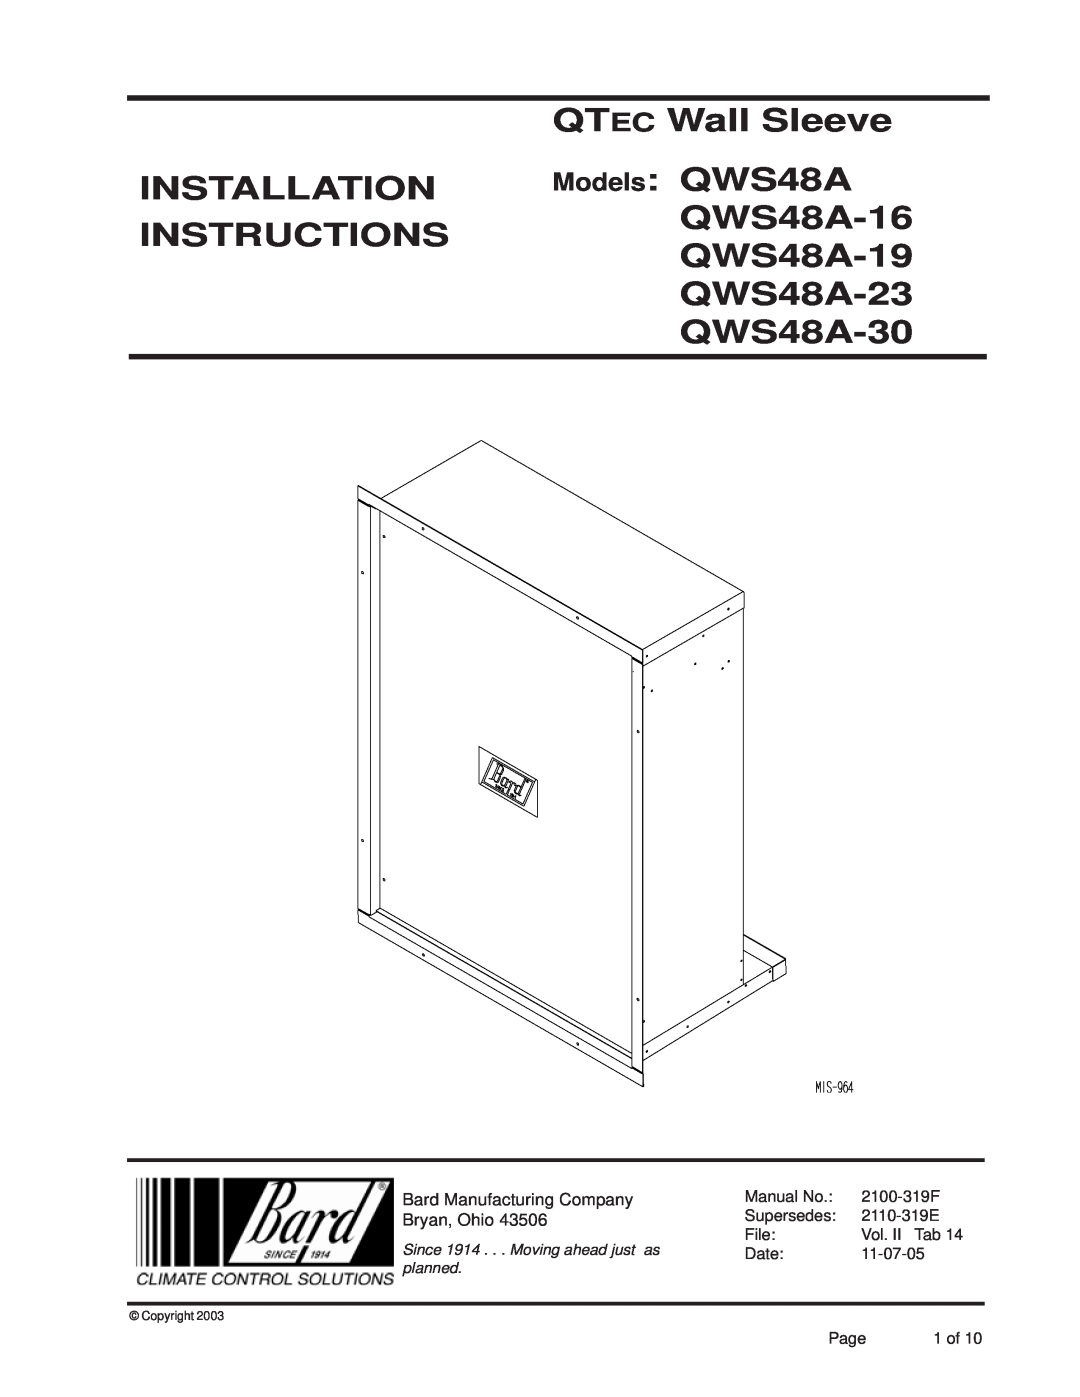 Bard QWS48A-19, QWS48A-23, QWS48A- 16 installation instructions QTEC Wall Sleeve INSTALLATION Models QWS48A, Copyright 